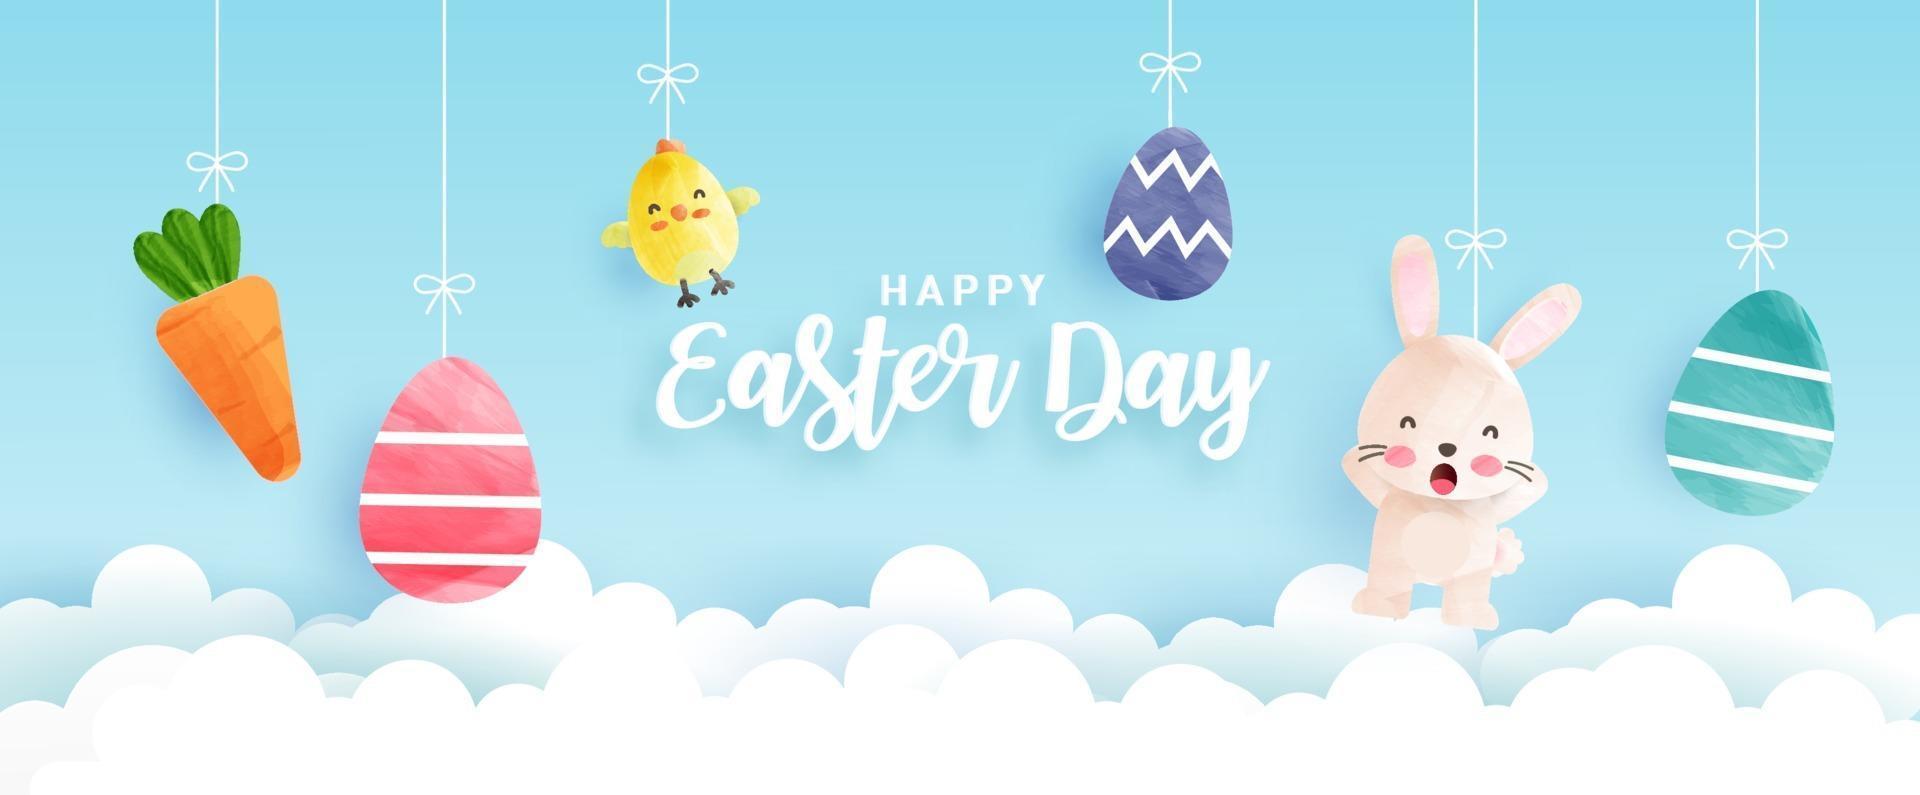 banner del giorno di Pasqua con simpatici polli, conigli e uova di Pasqua in stile acquerello vettore